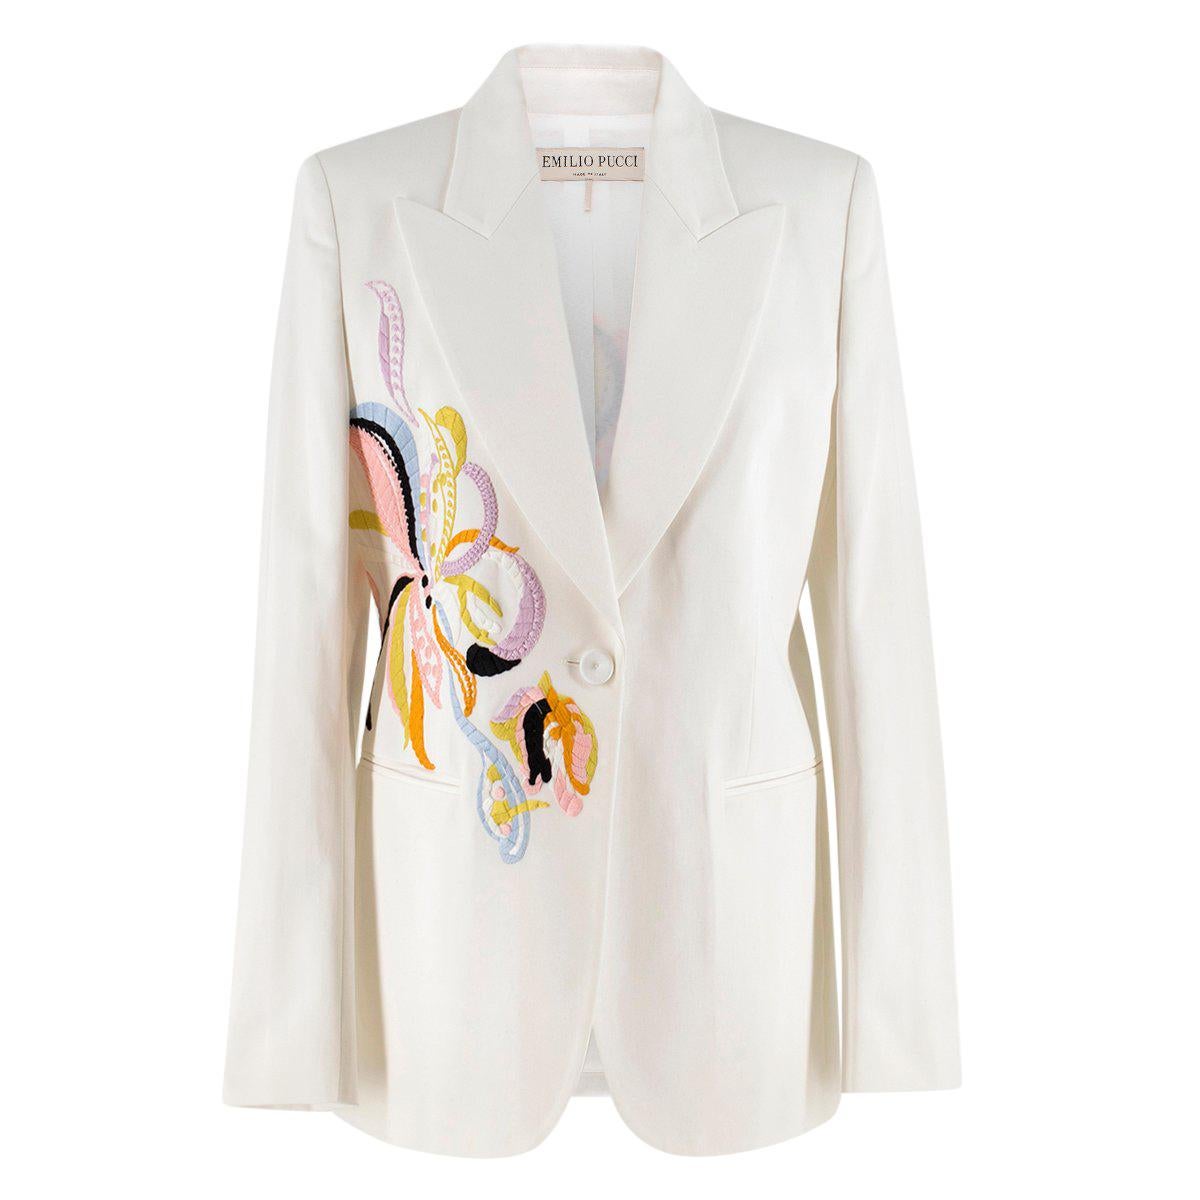  Emilio Pucci embroidered white twill blazer US 8 For Sale